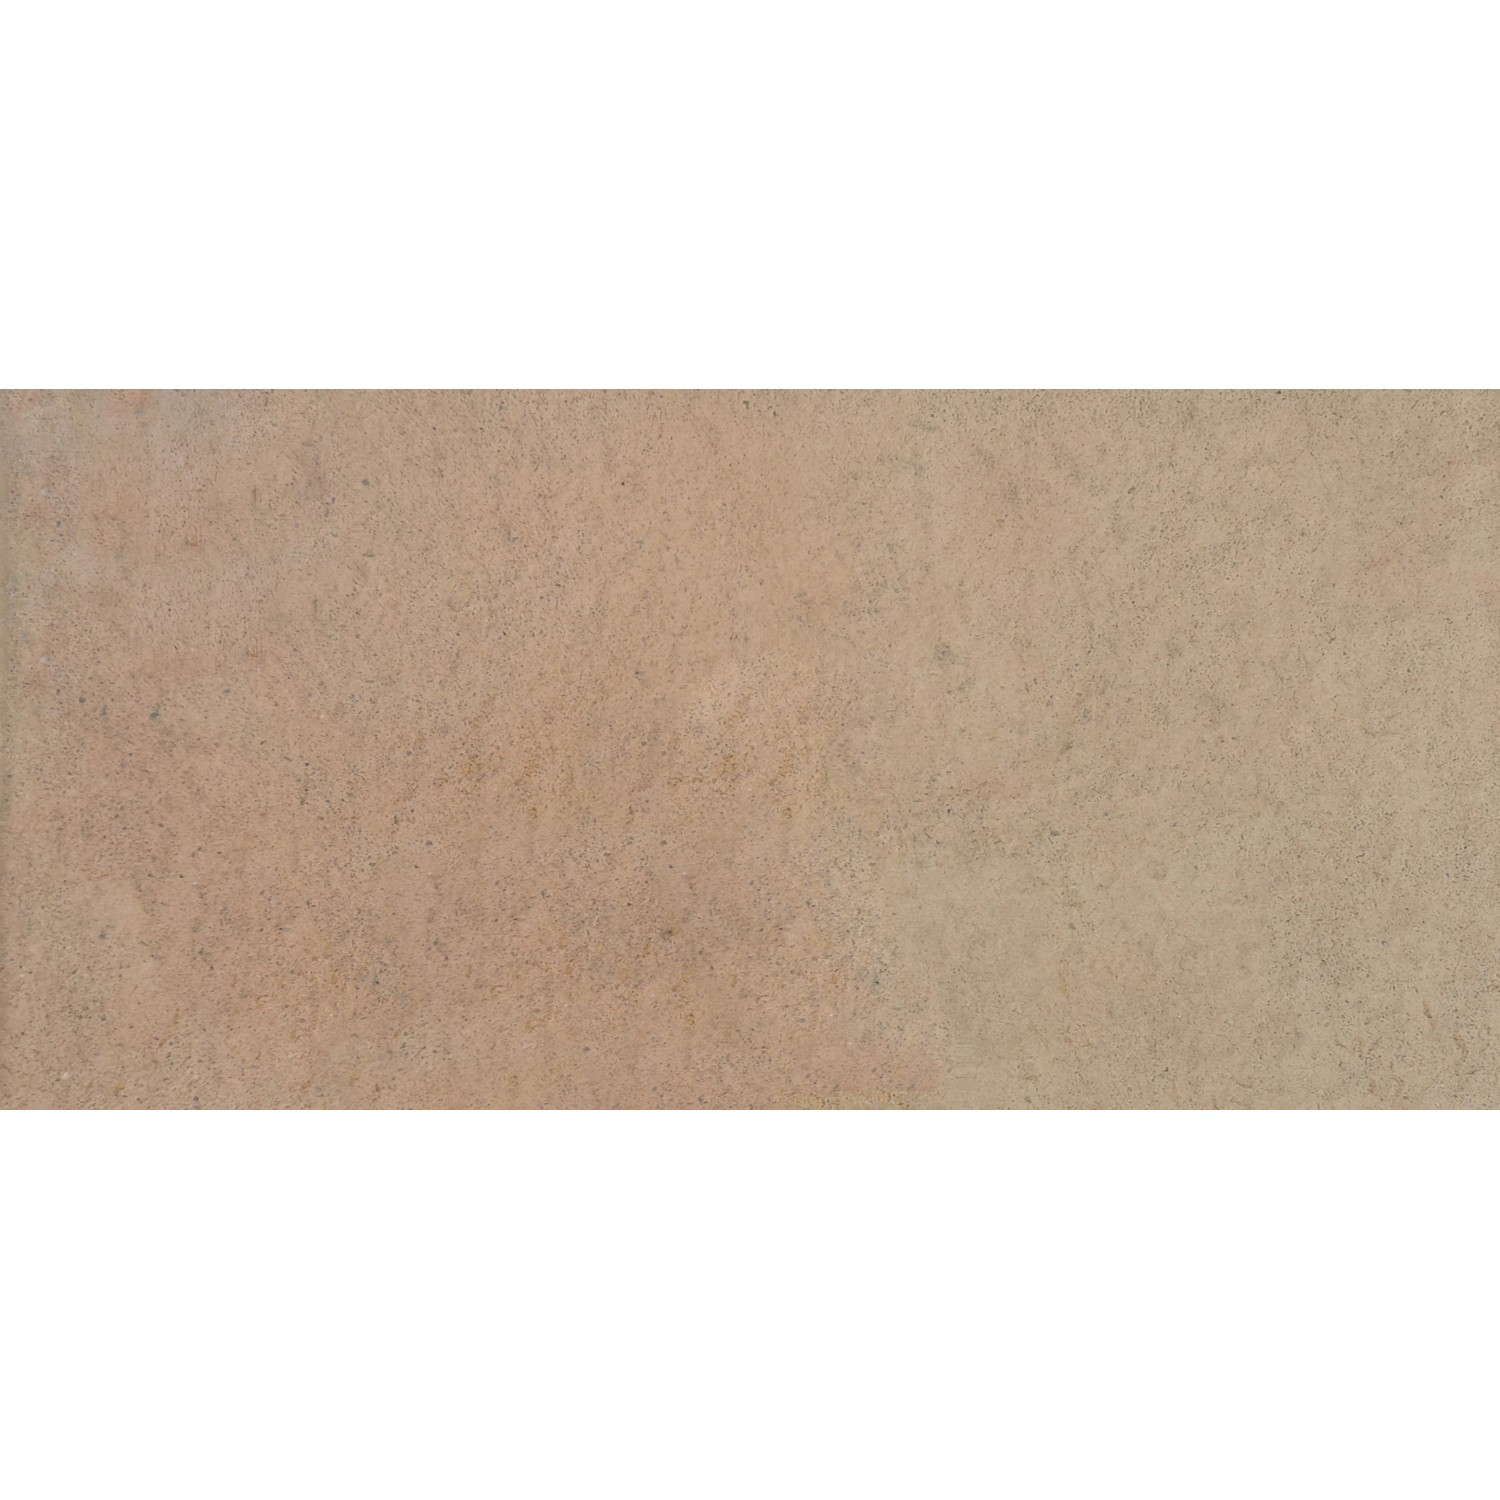 Diephaus Terrassenplatte Finessa Lachs 80 cm x 40 cm x 4 cm von Diephaus